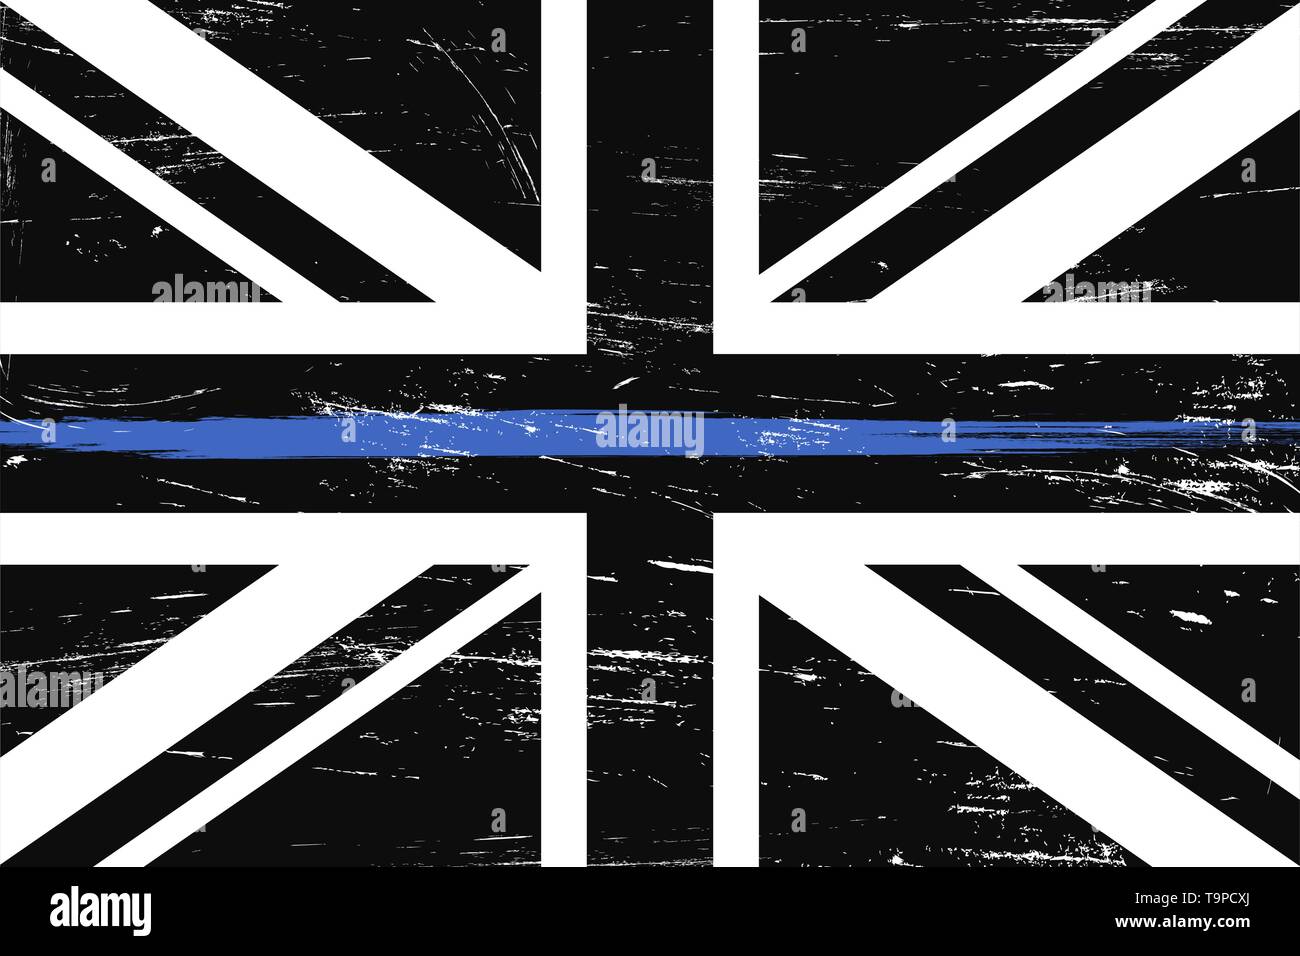 Grunge pavillon britannique avec une fine ligne bleue - un signe d'honorer et de respecter la police, l'armée et des officiers militaires. Illustration de Vecteur